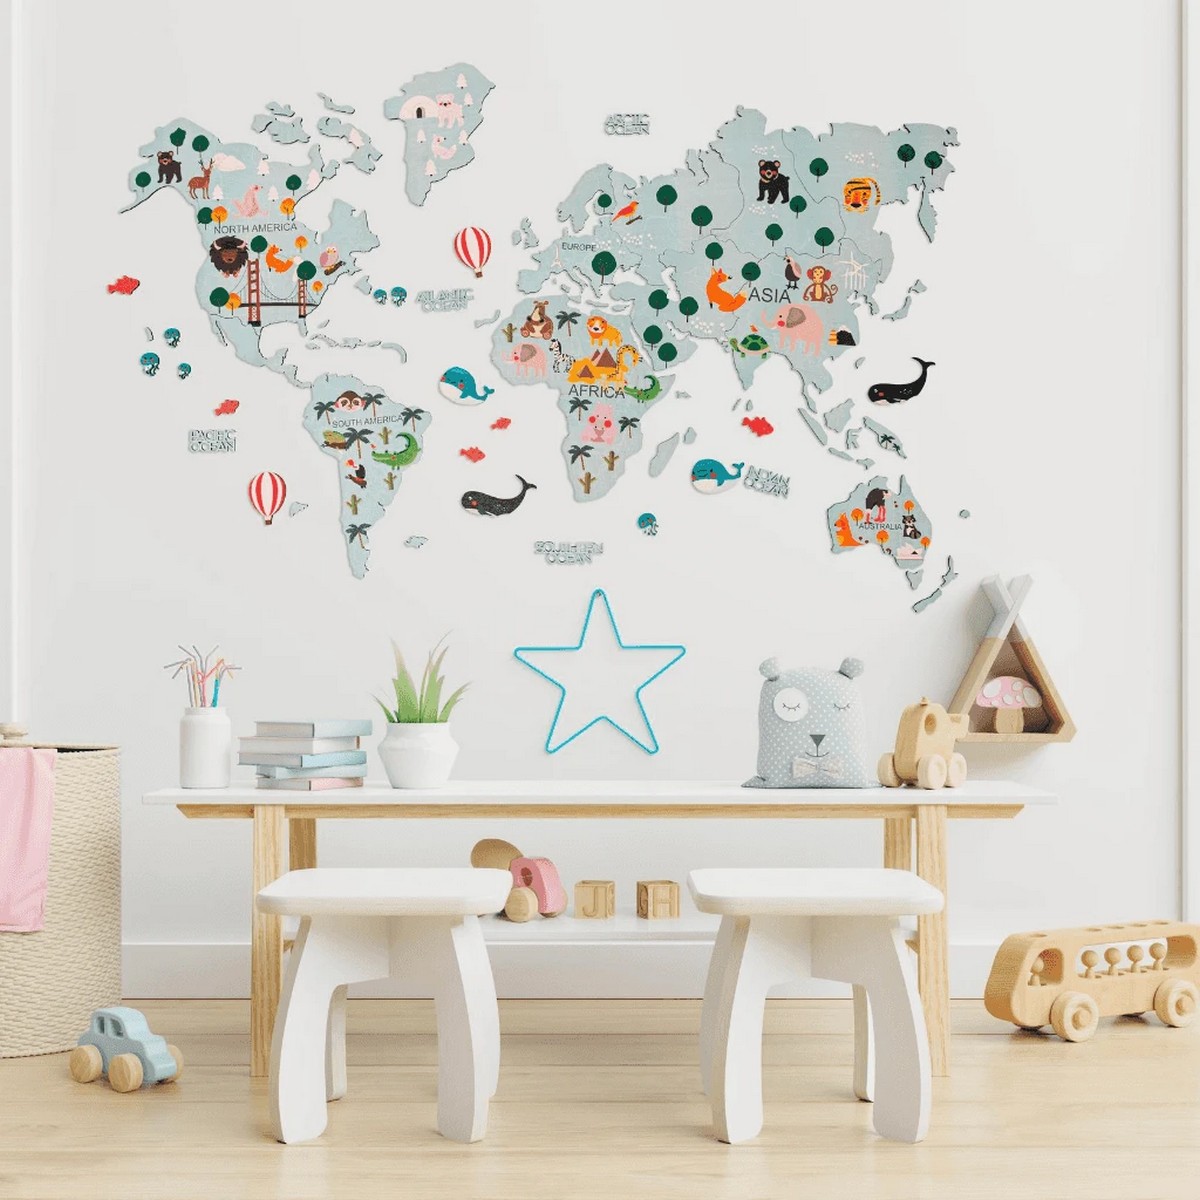 Carte du monde pour les enfants